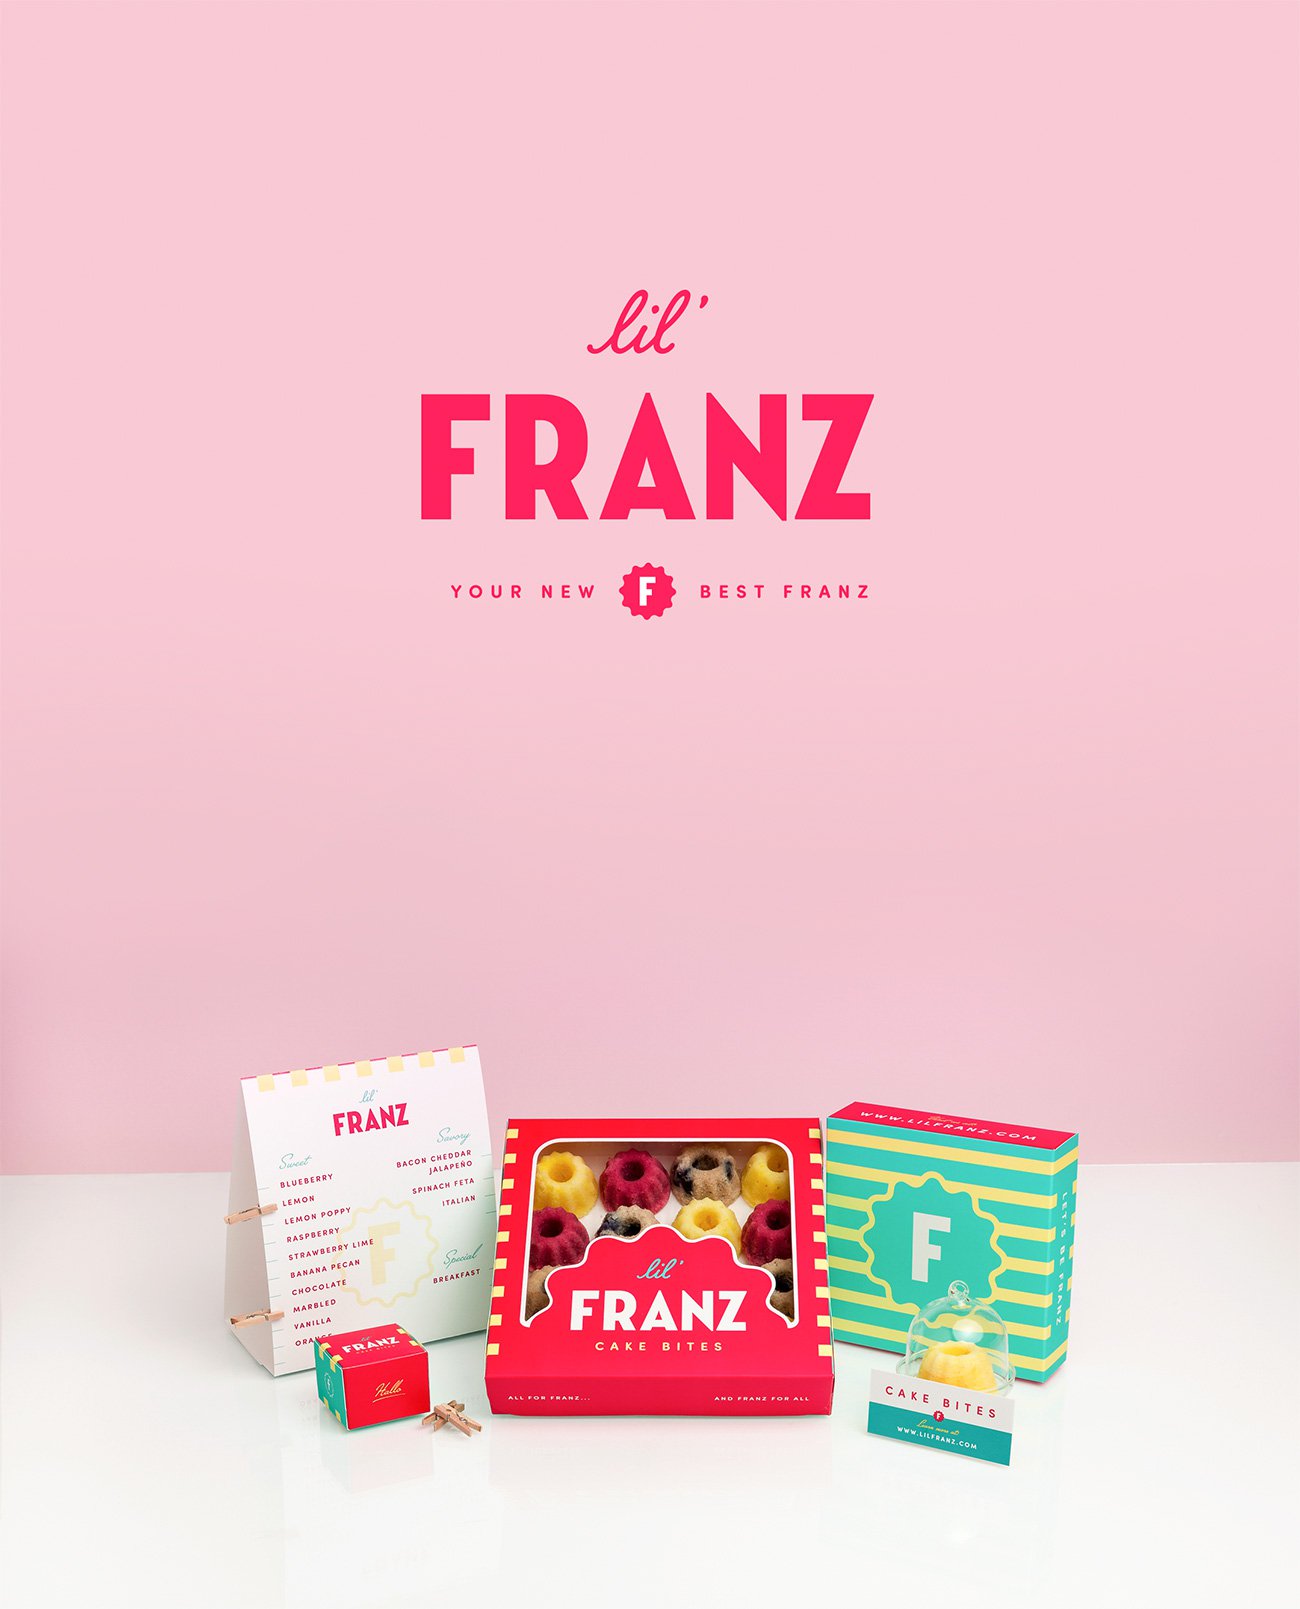 Lil' Franz Branding